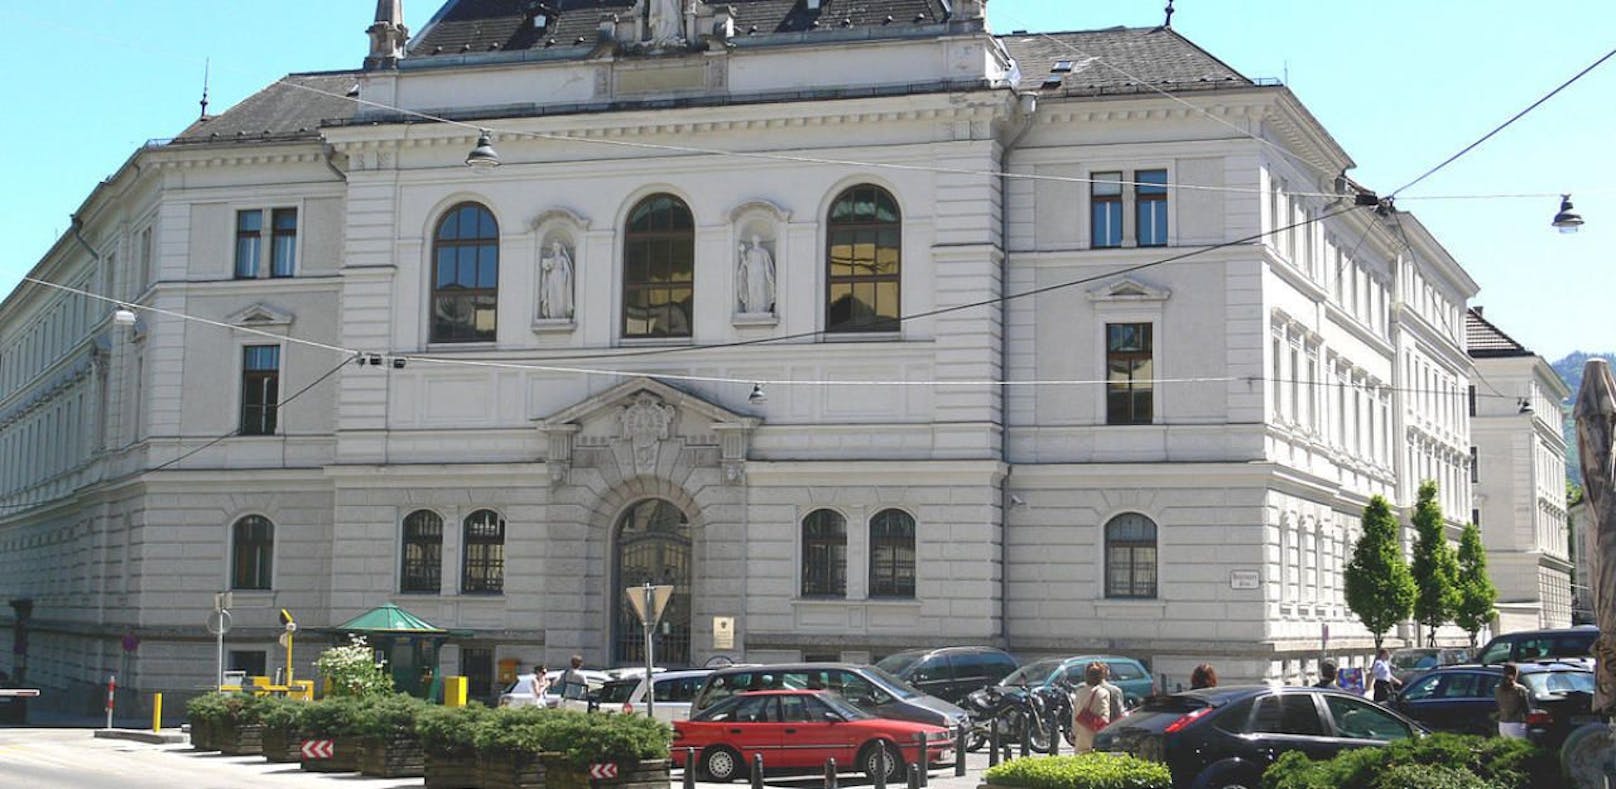 Das frisch renovierte Landesgericht in Salzburg in dem heute der Terrorprozess gegen einen anerkannten Flüchtling aus Syrien startete.